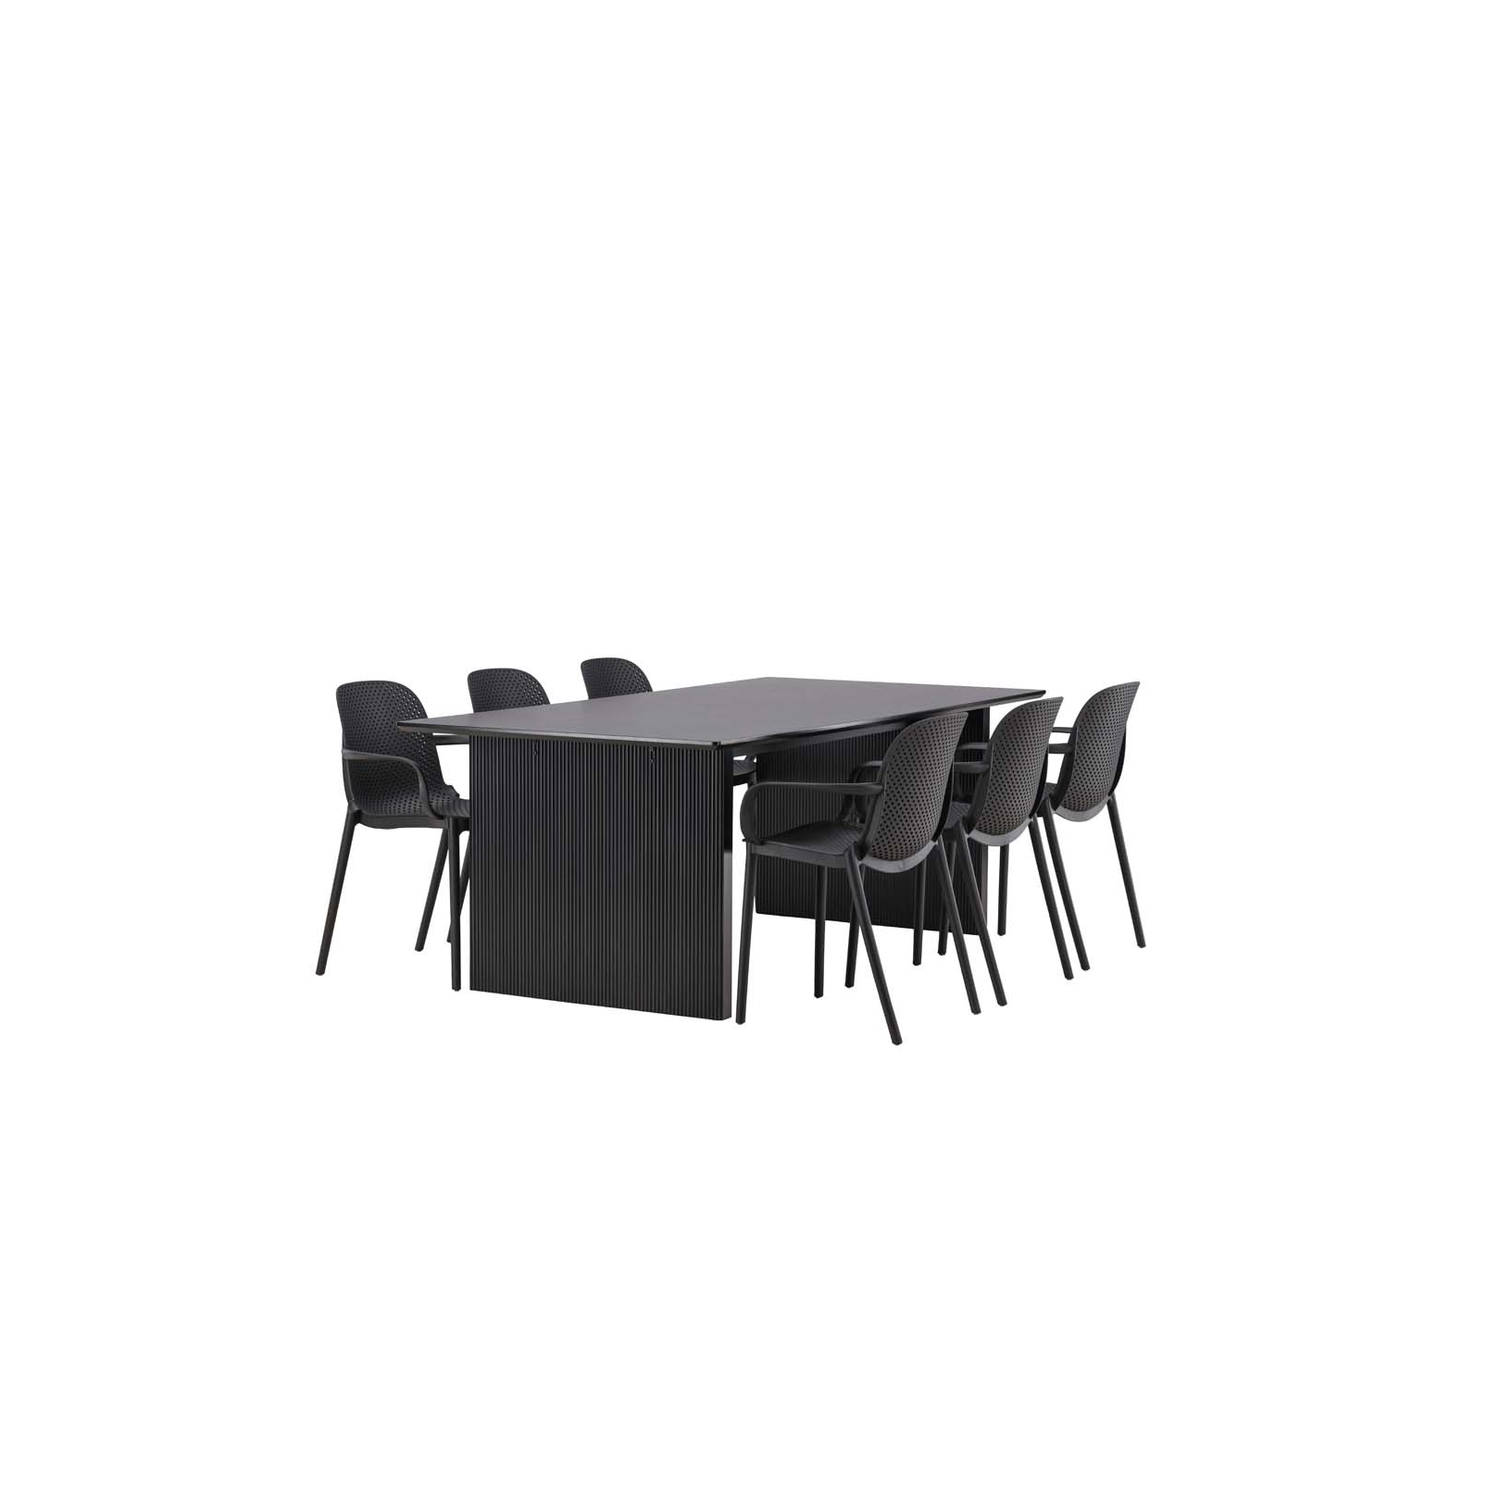 Vail eethoek tafel zwart en 6 baltimore stoelen zwart.